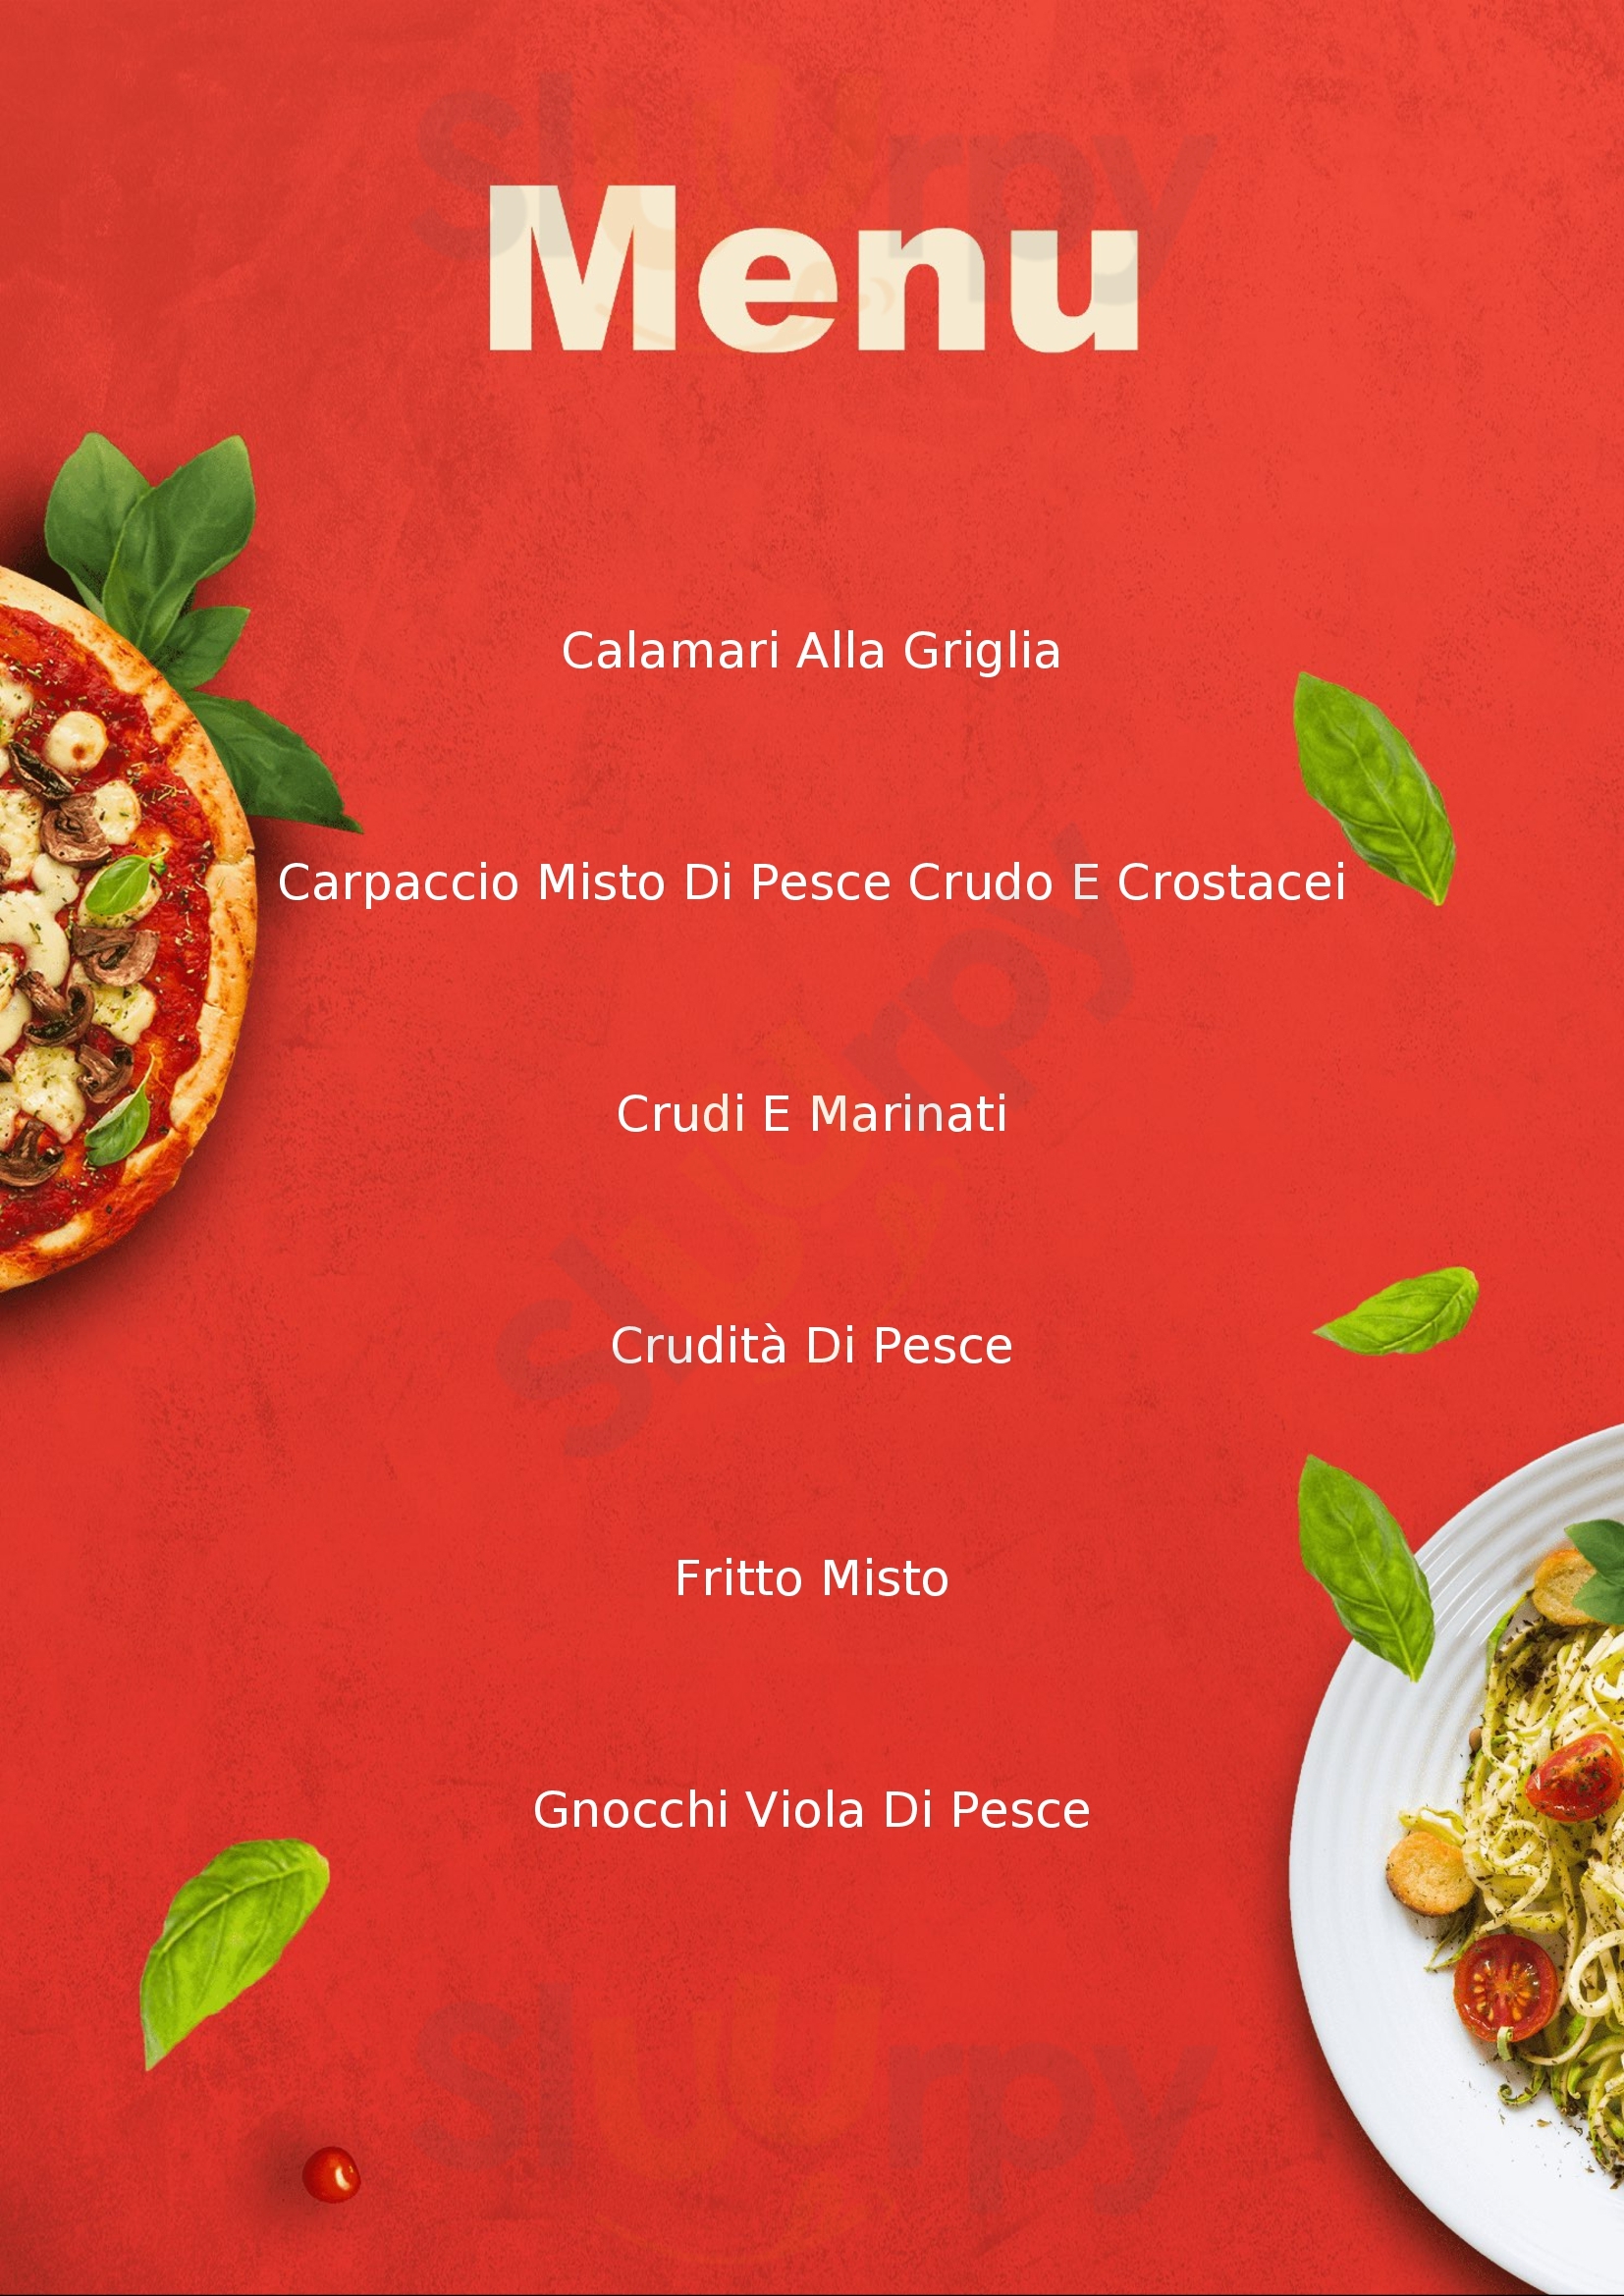 Ristorante Pizzeria Selice Imola menù 1 pagina